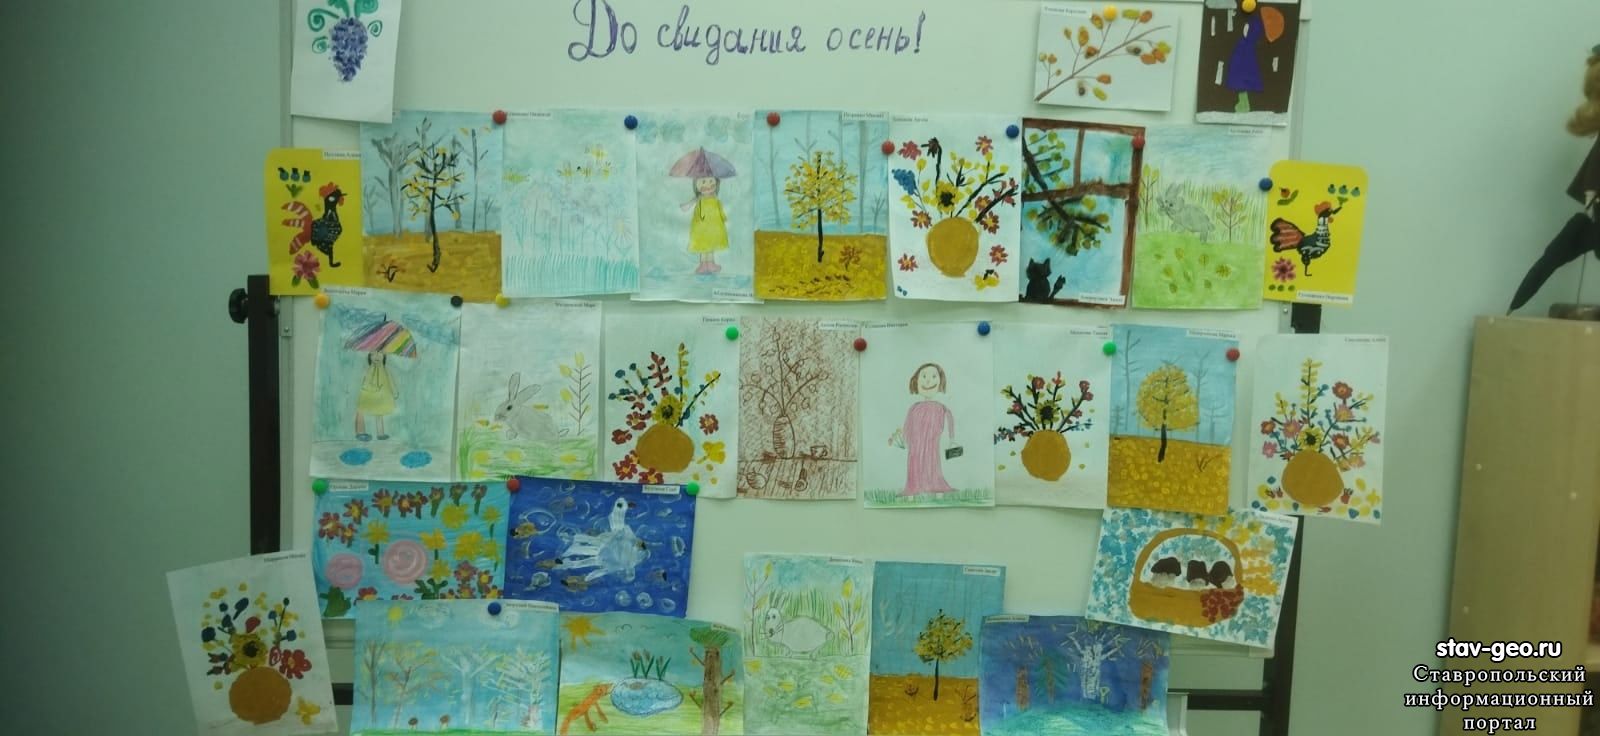 Выставка детских работ кружка по рисованию "Фантазия" на тему: "До свидания, осень!